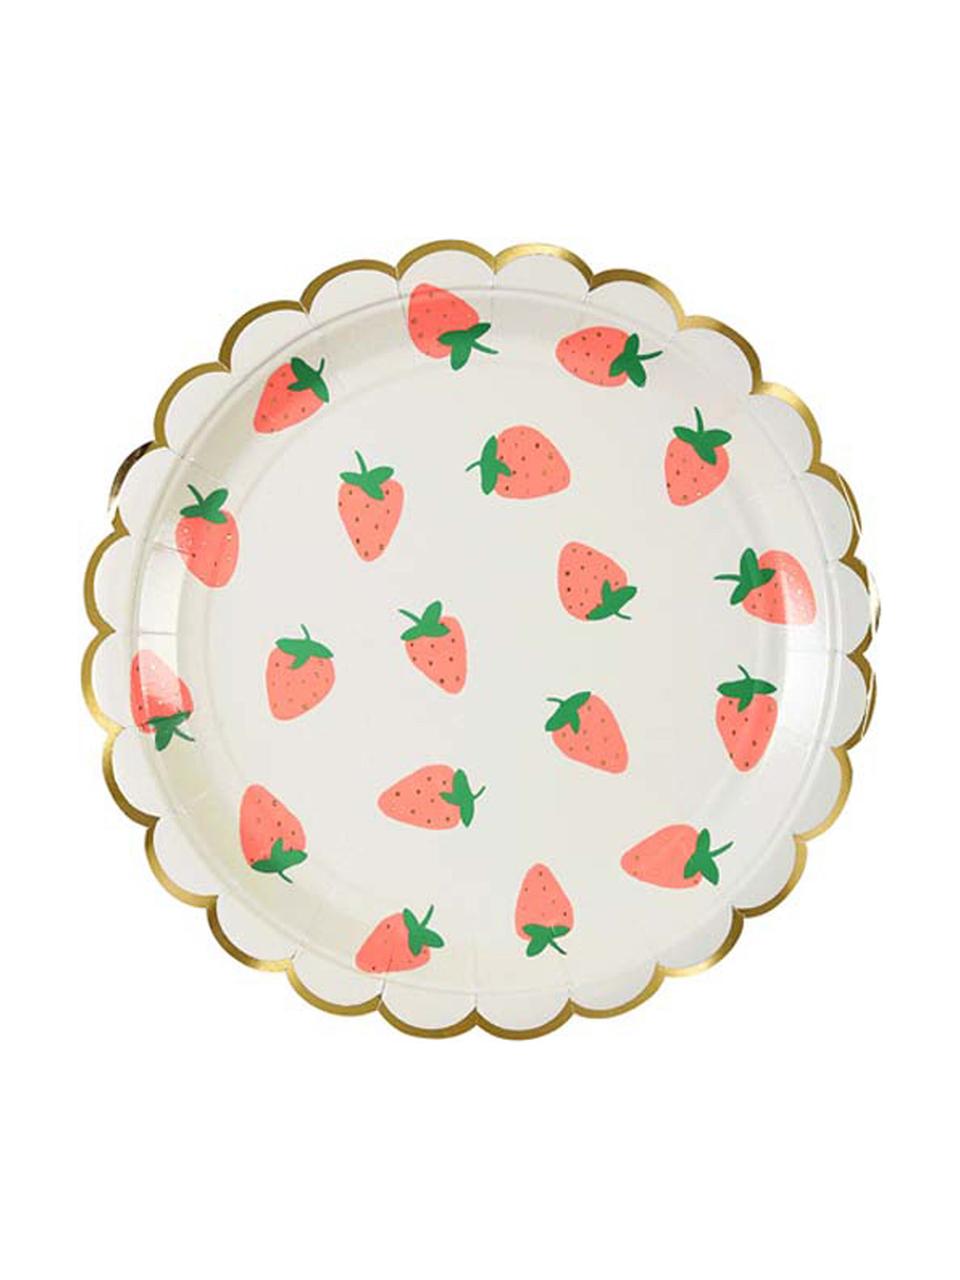 Papírový talíř Strawberry, 8 ks, Bílá, růžová, zelená